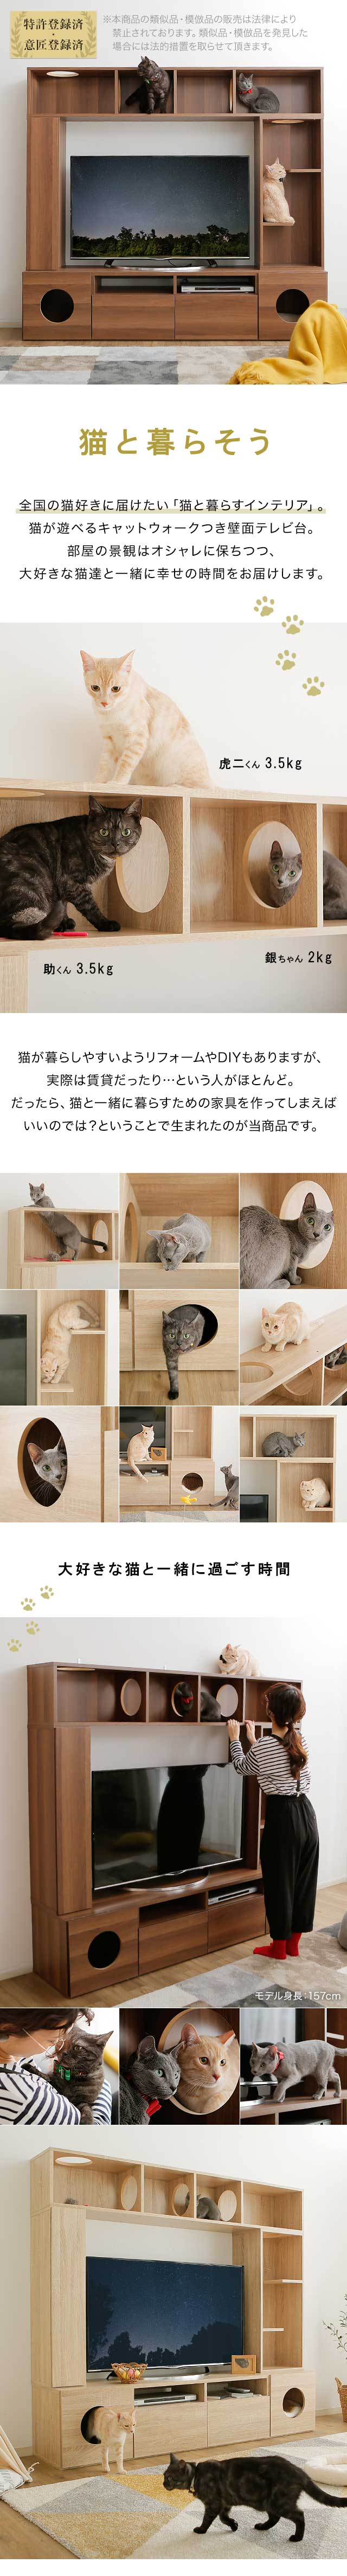 テレビ台 ハイタイプ 猫家具 AVラック 180cm 収納 壁面収納 キャット 